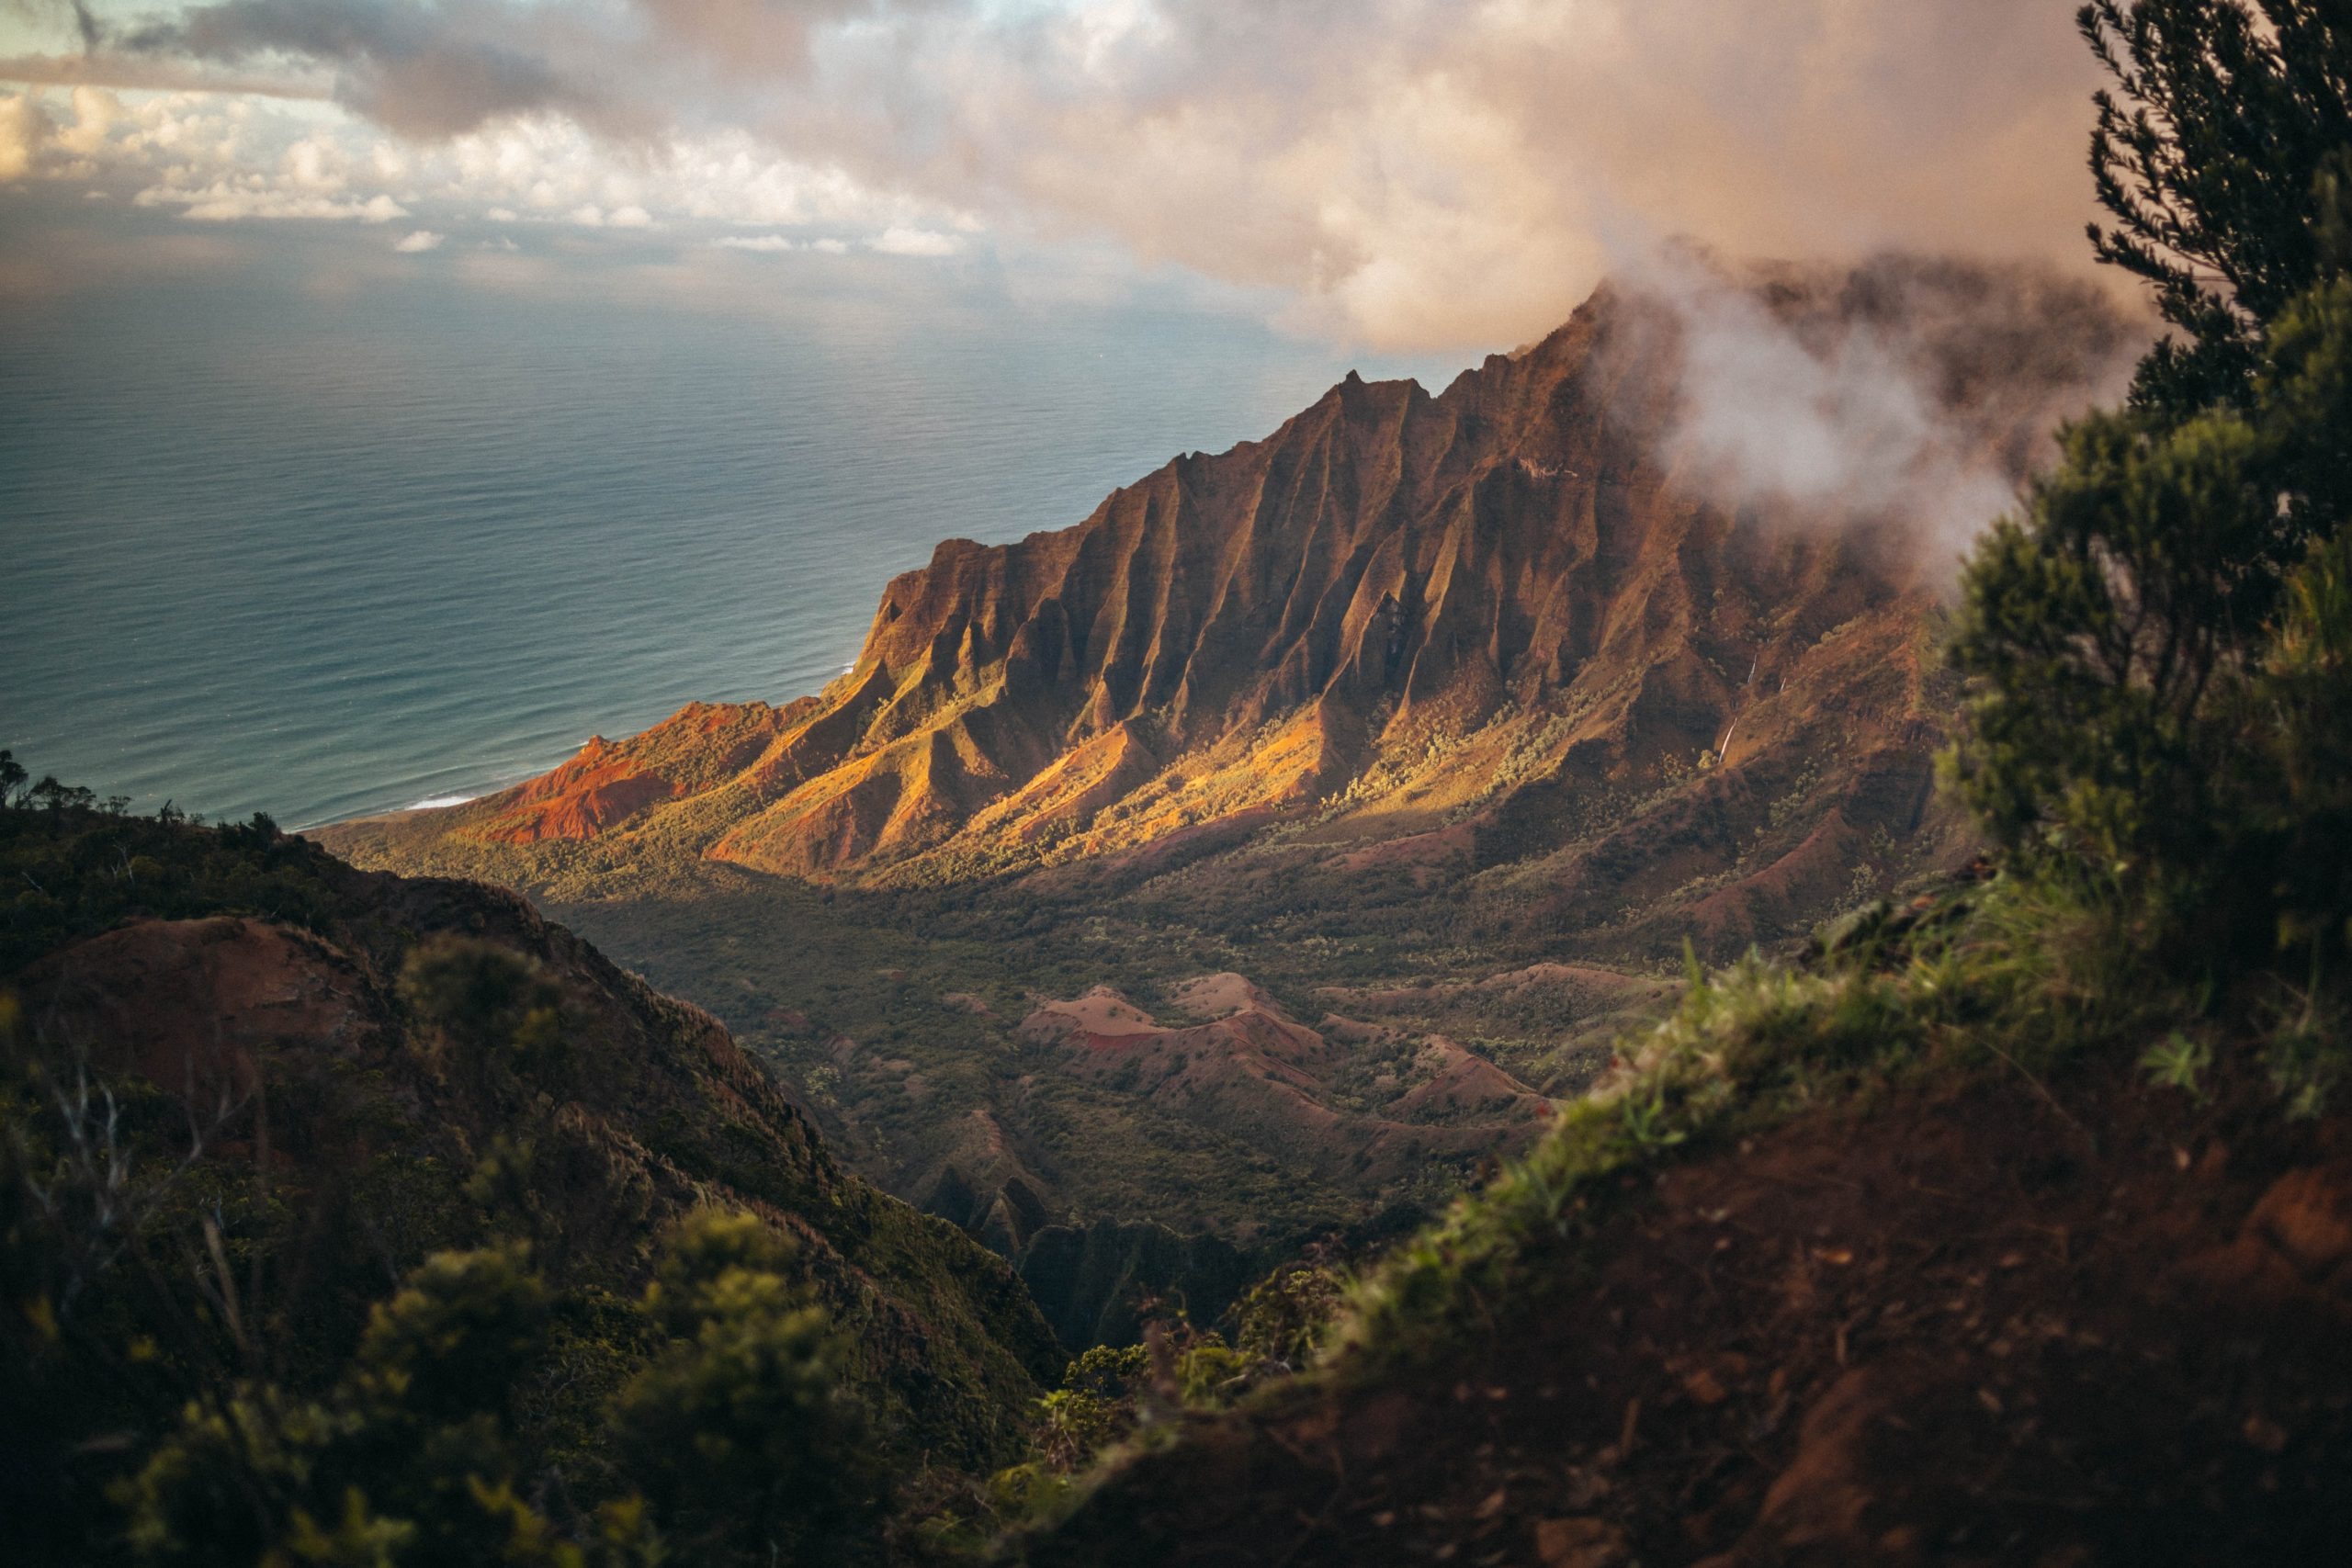 Mountains off Kapaʻa, Hawaii